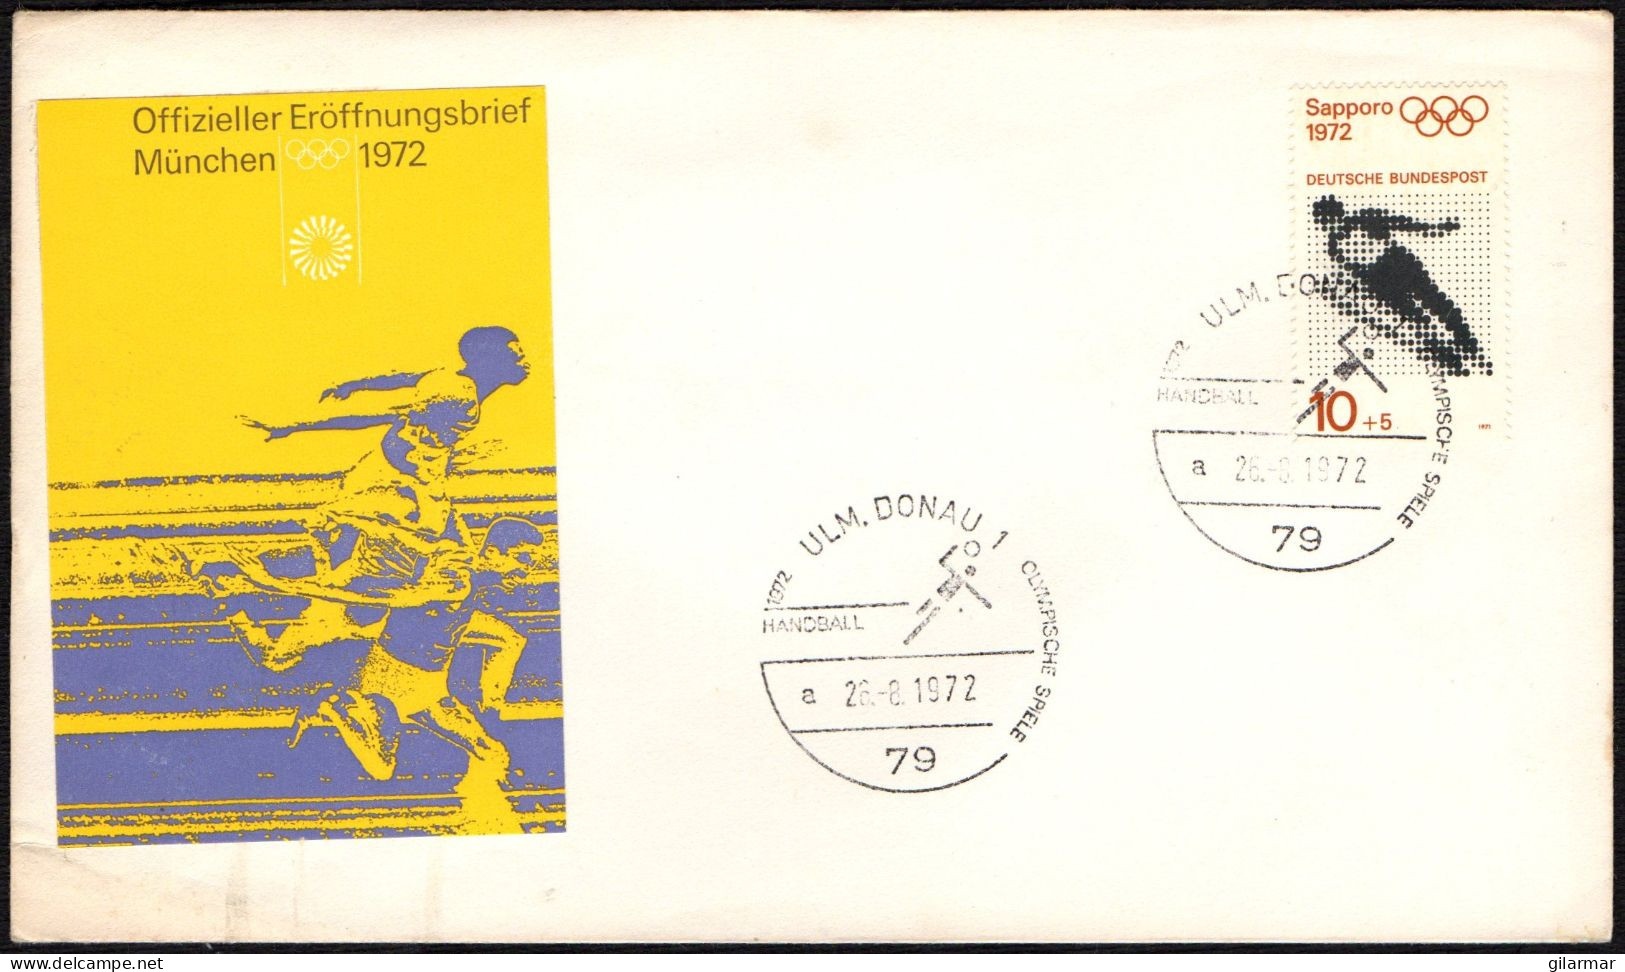 PALLAMANO - GERMANY ULM DONAU 1972 - OLYMPIC GAMES MUNICH 1972 - HANDBALL - M - Pallamano